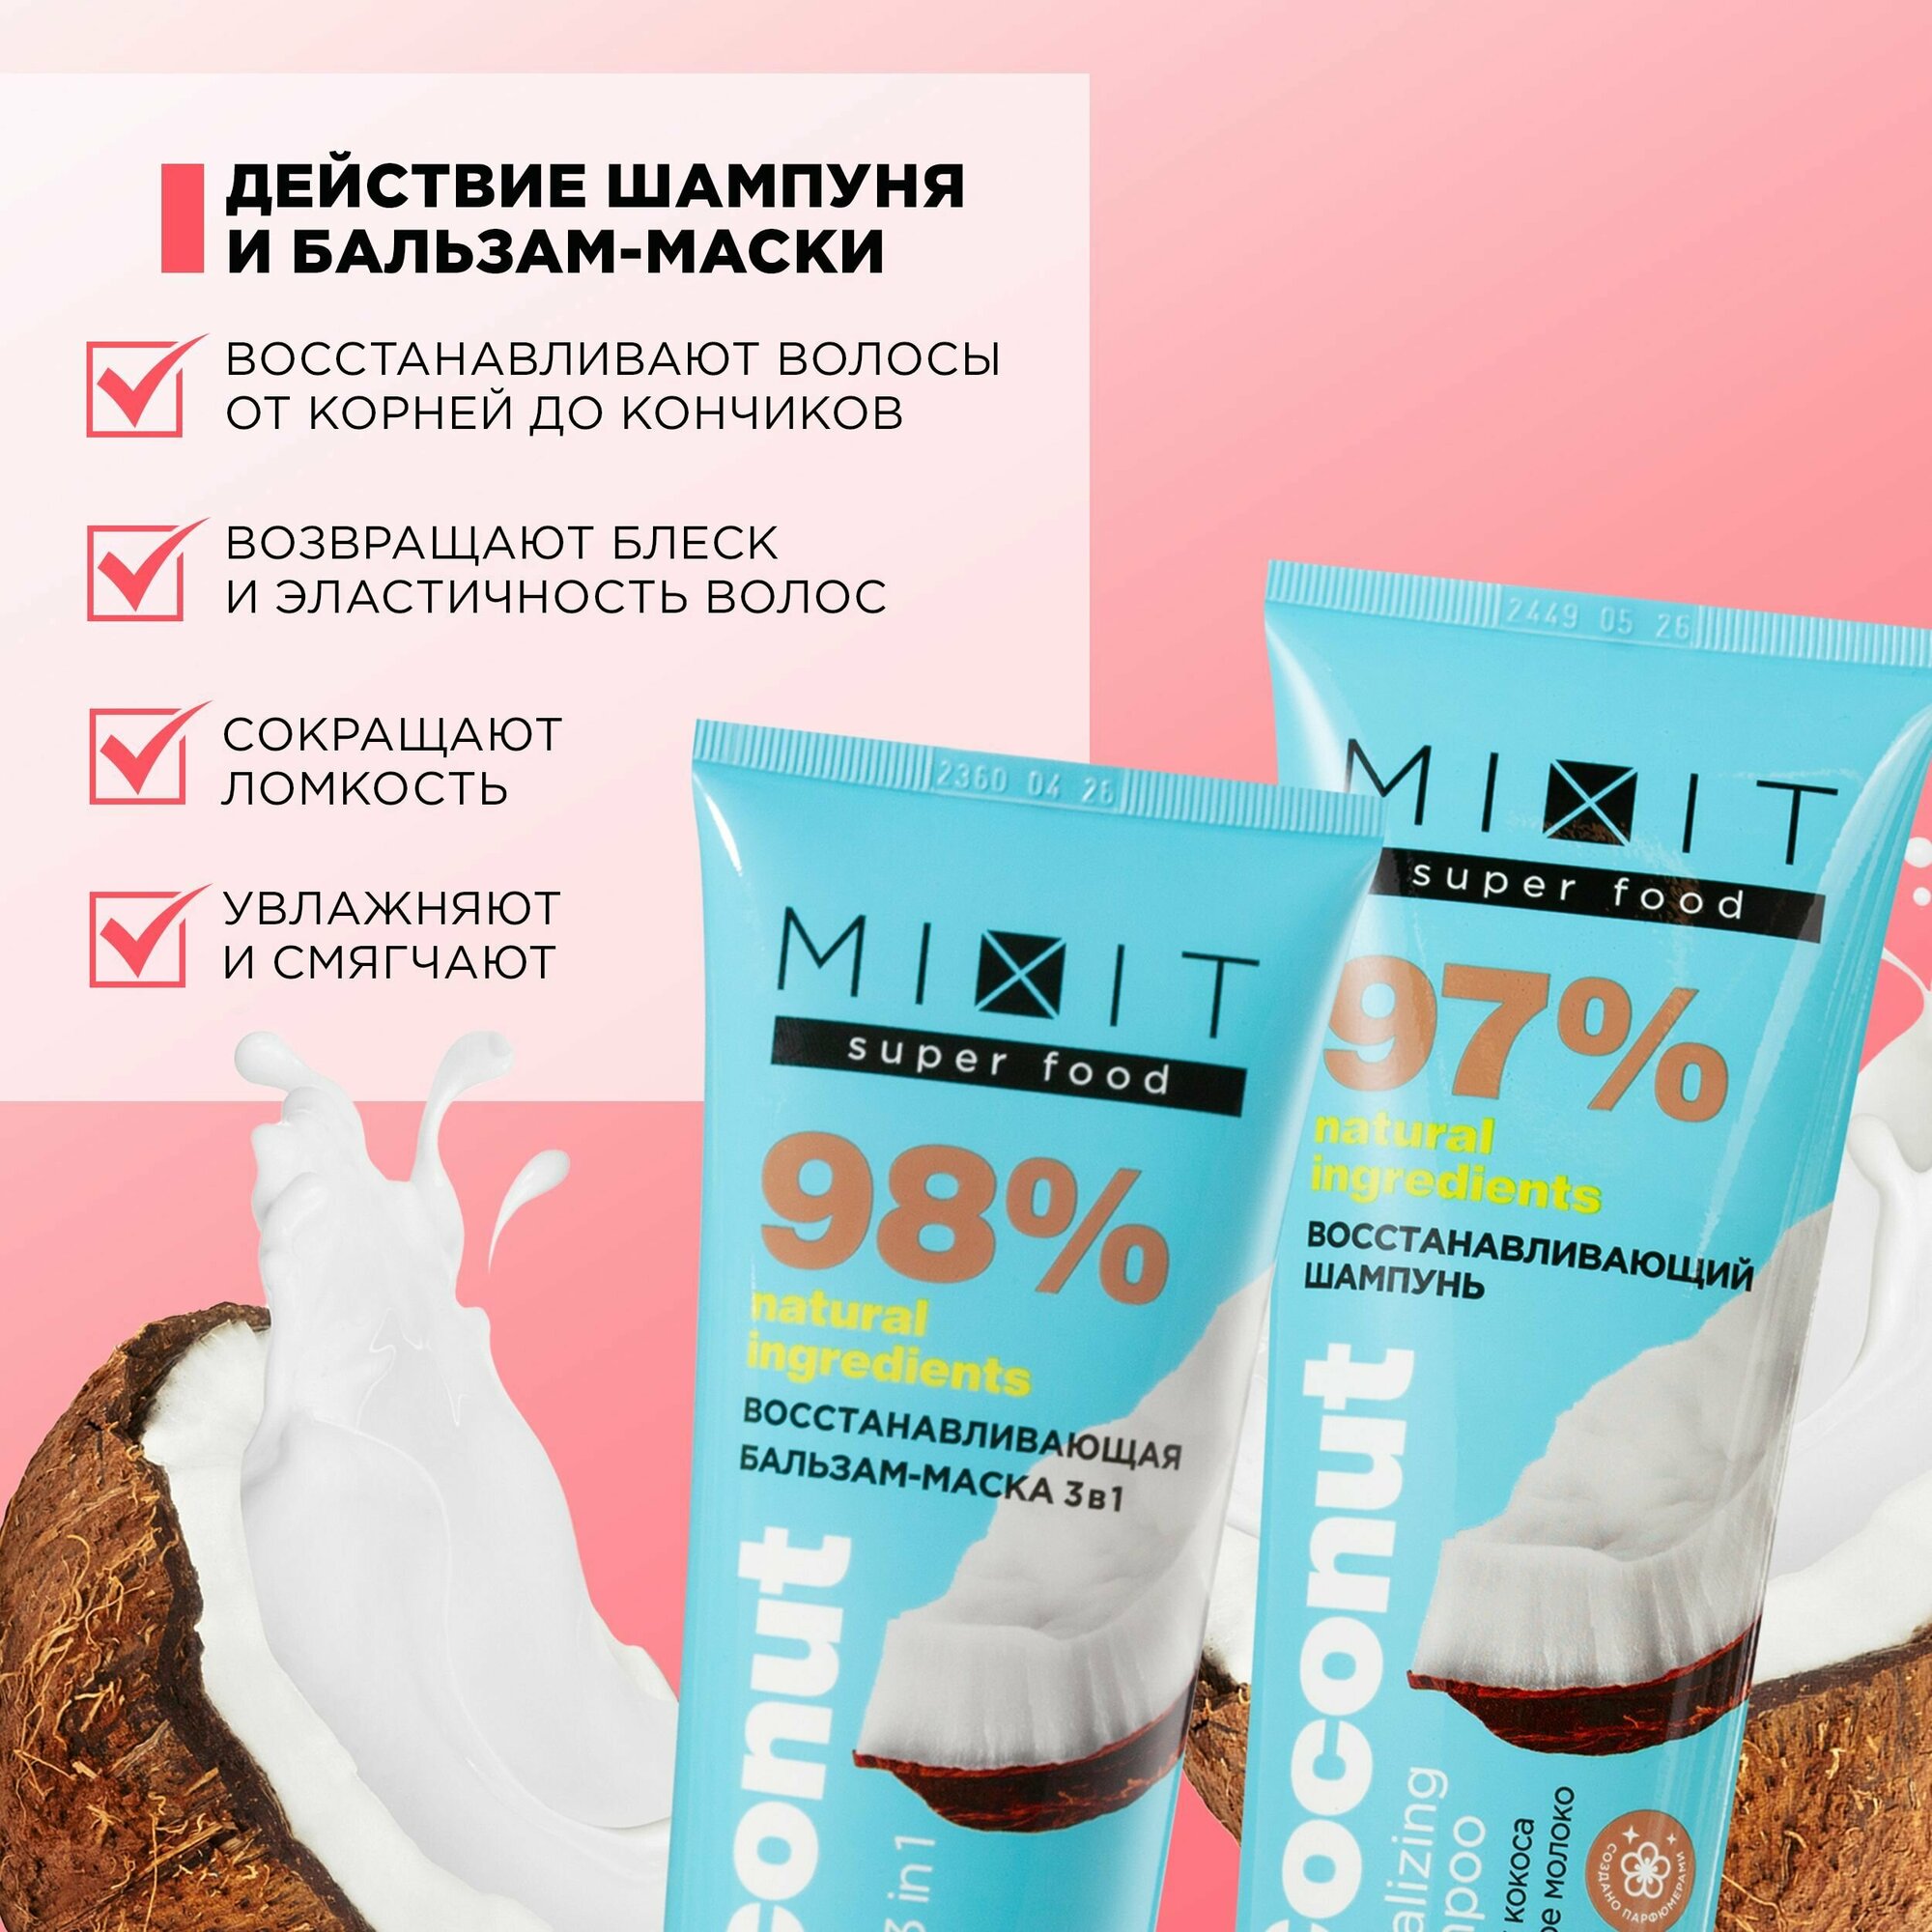 MIXIT Подарочный косметический набор средств по уходу за волосами: восстанавливающий шампунь и бальзам-маска 3 в 1 с экстрактом кокоса. Комплексное восстановление для волос SUPER FOOD